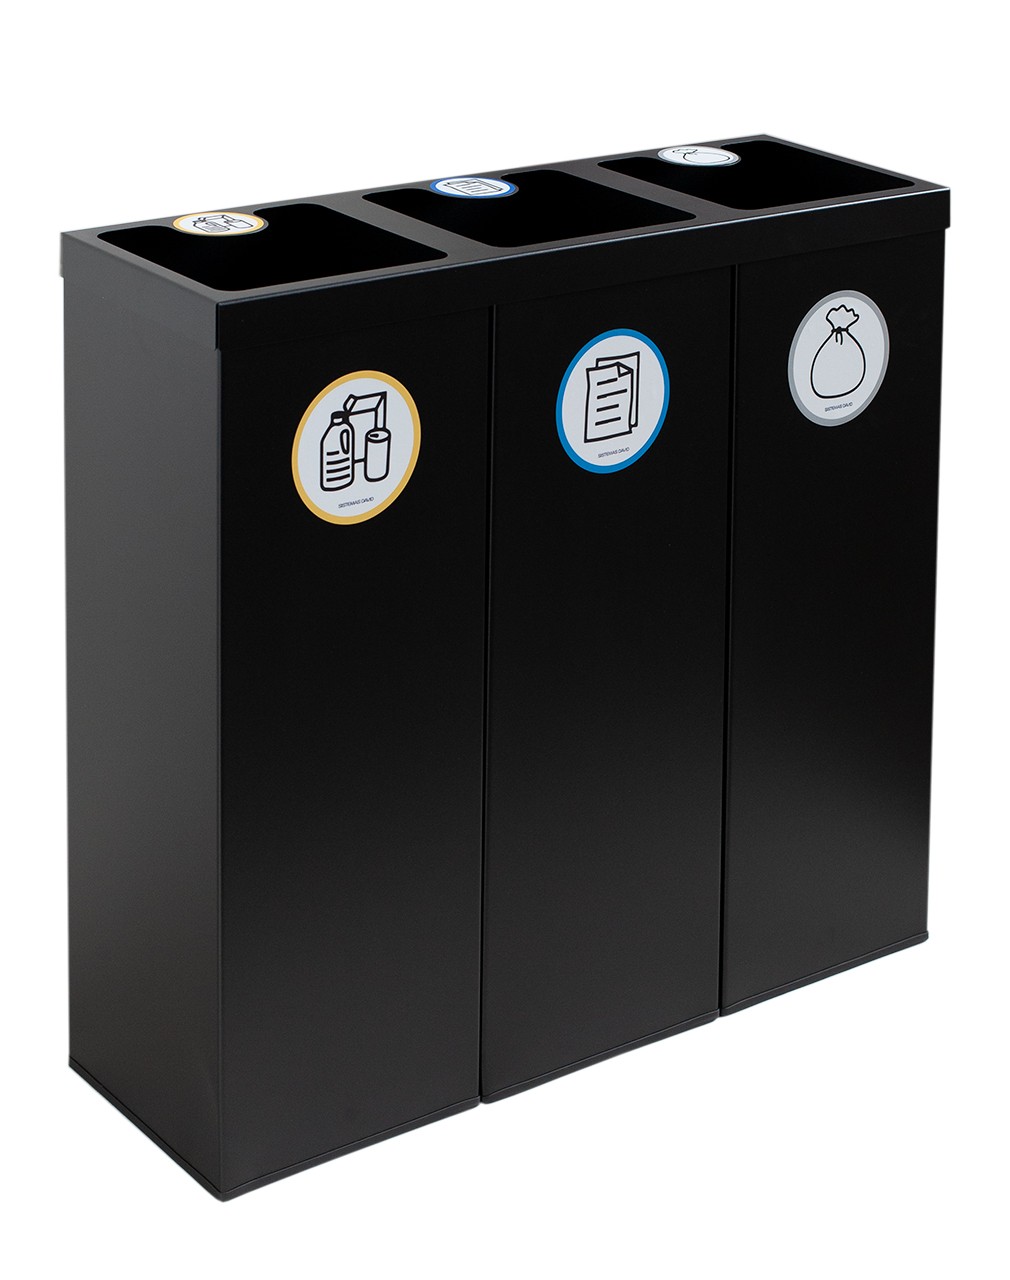 Papelera metálica negra de reciclaje 3 residuos. Capacidad 132 litros  (Amarillo / Azul / Gris) - Respira de compres al Ripollès